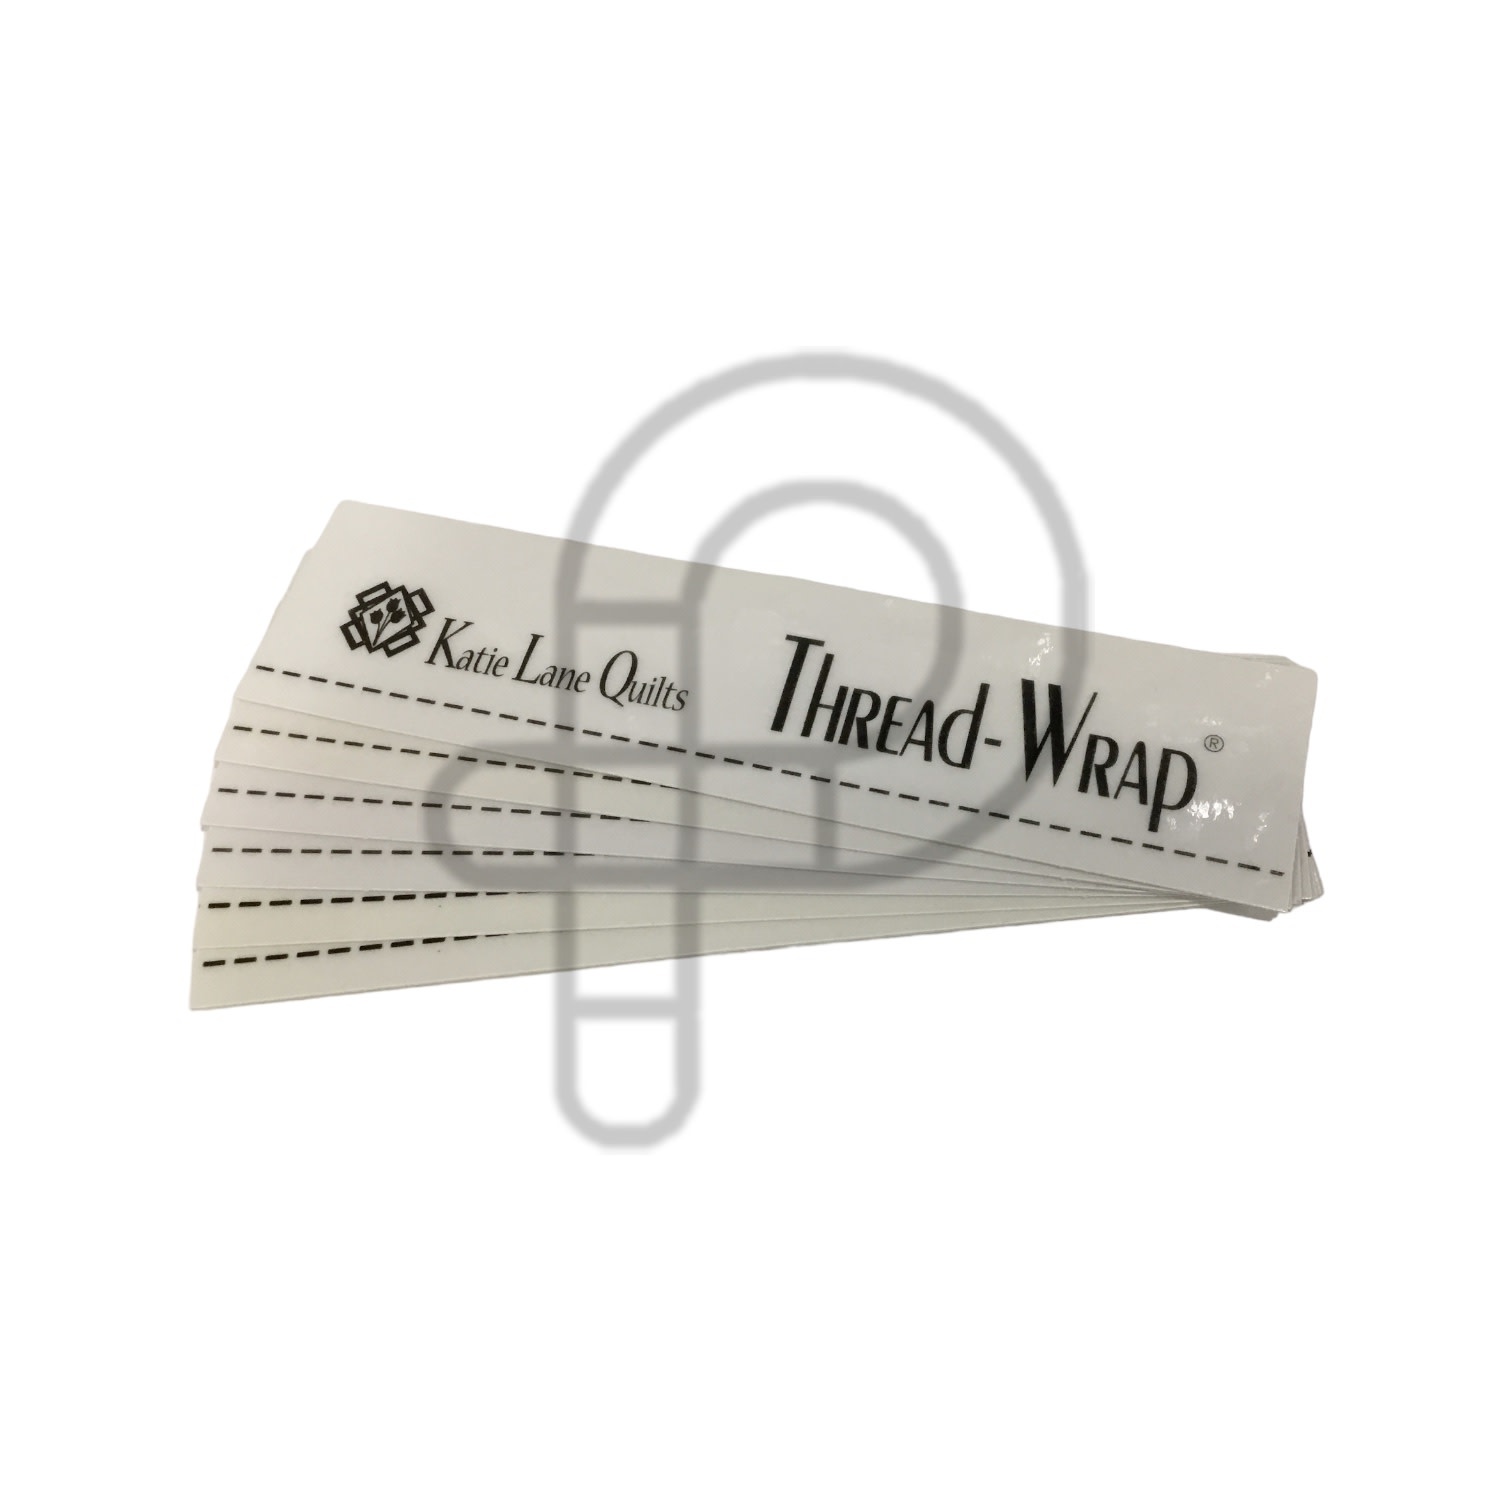 Générique Thread-Wrap Large Spools (6 Pcs)